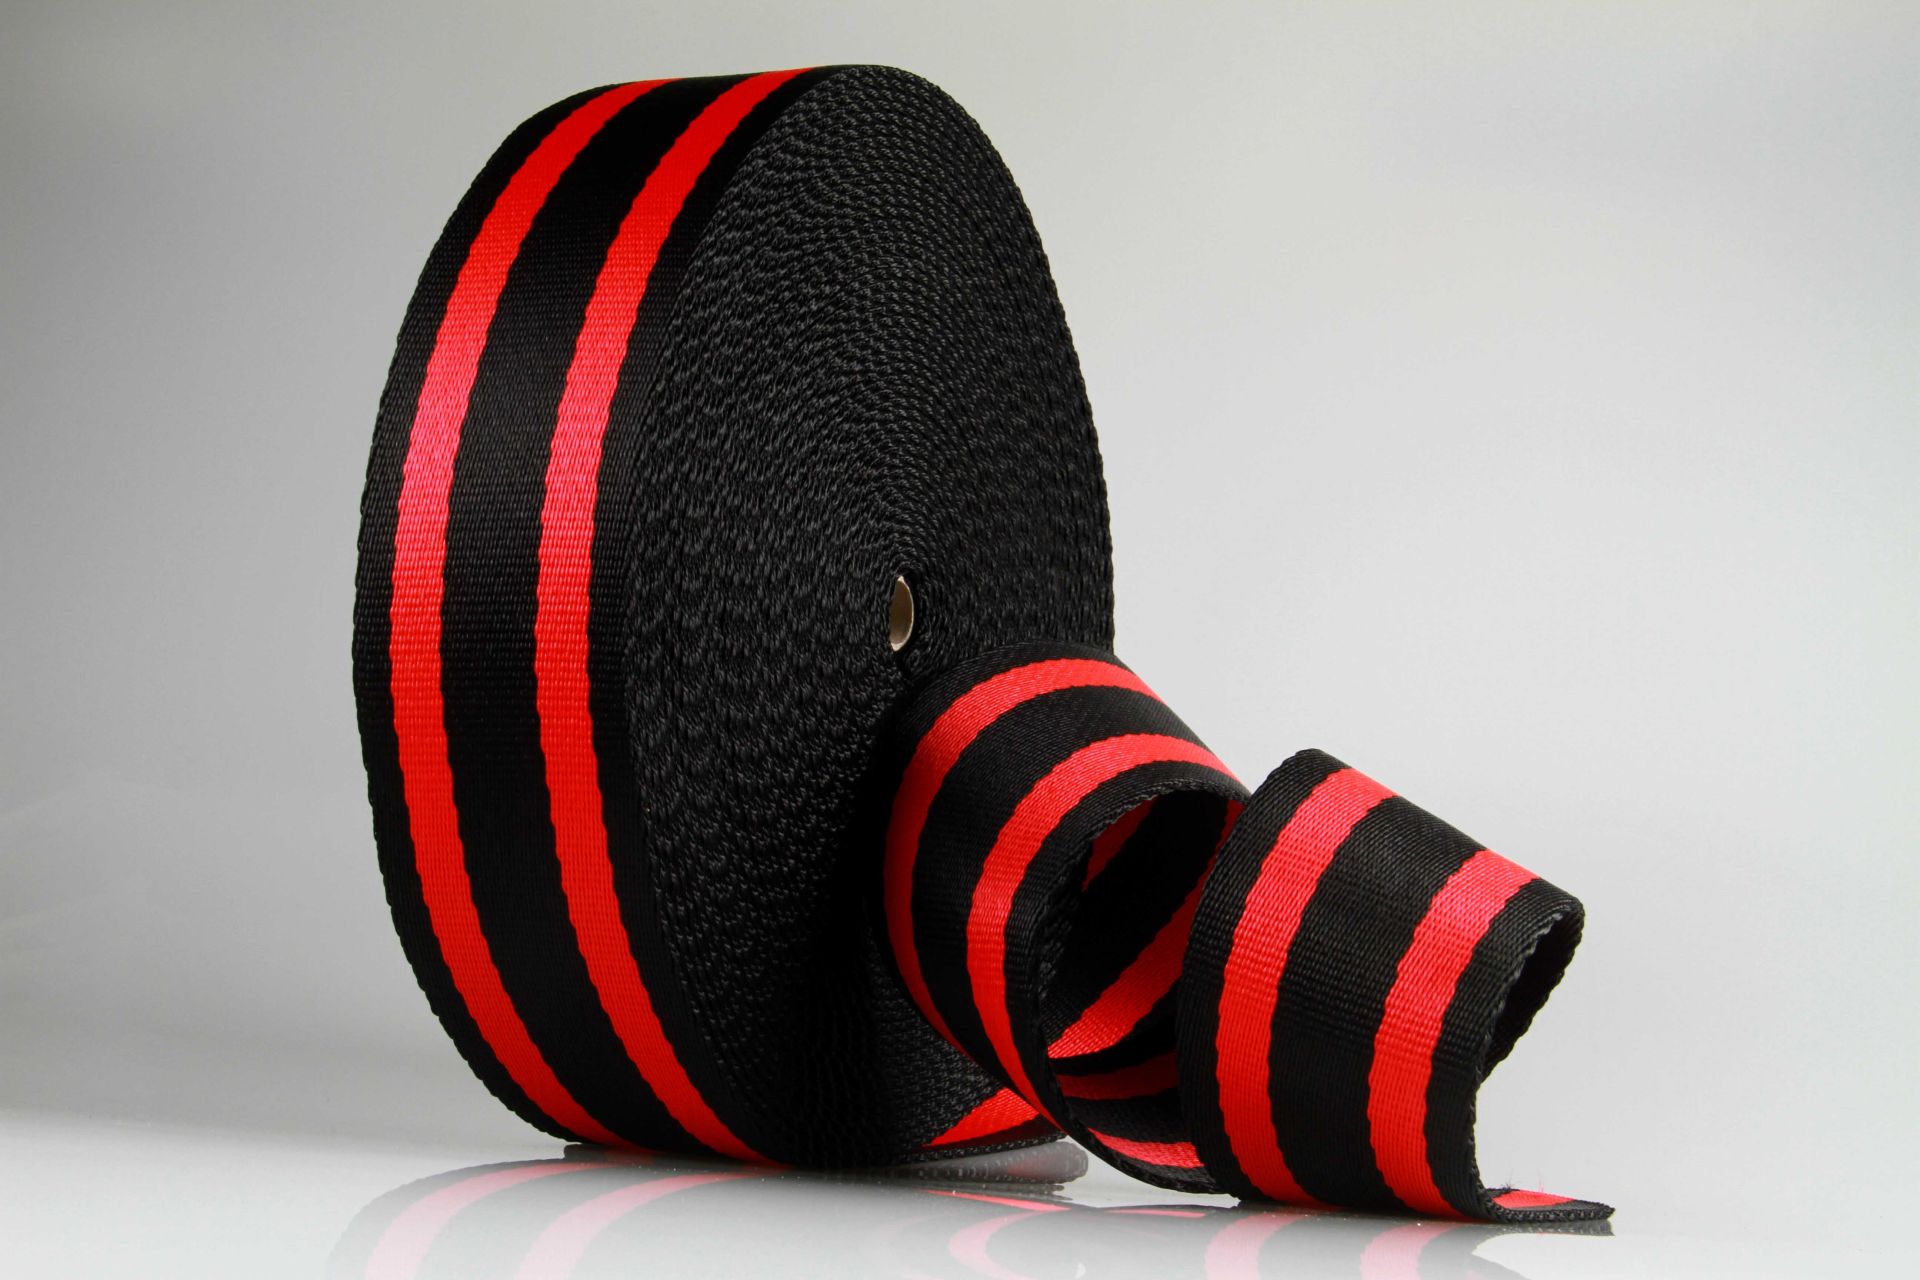 Dicke Gurtware aus PP | Meterware | 85 mm Breite | Hochfest und SEHR Robust | Schwarz mit roten Streifen